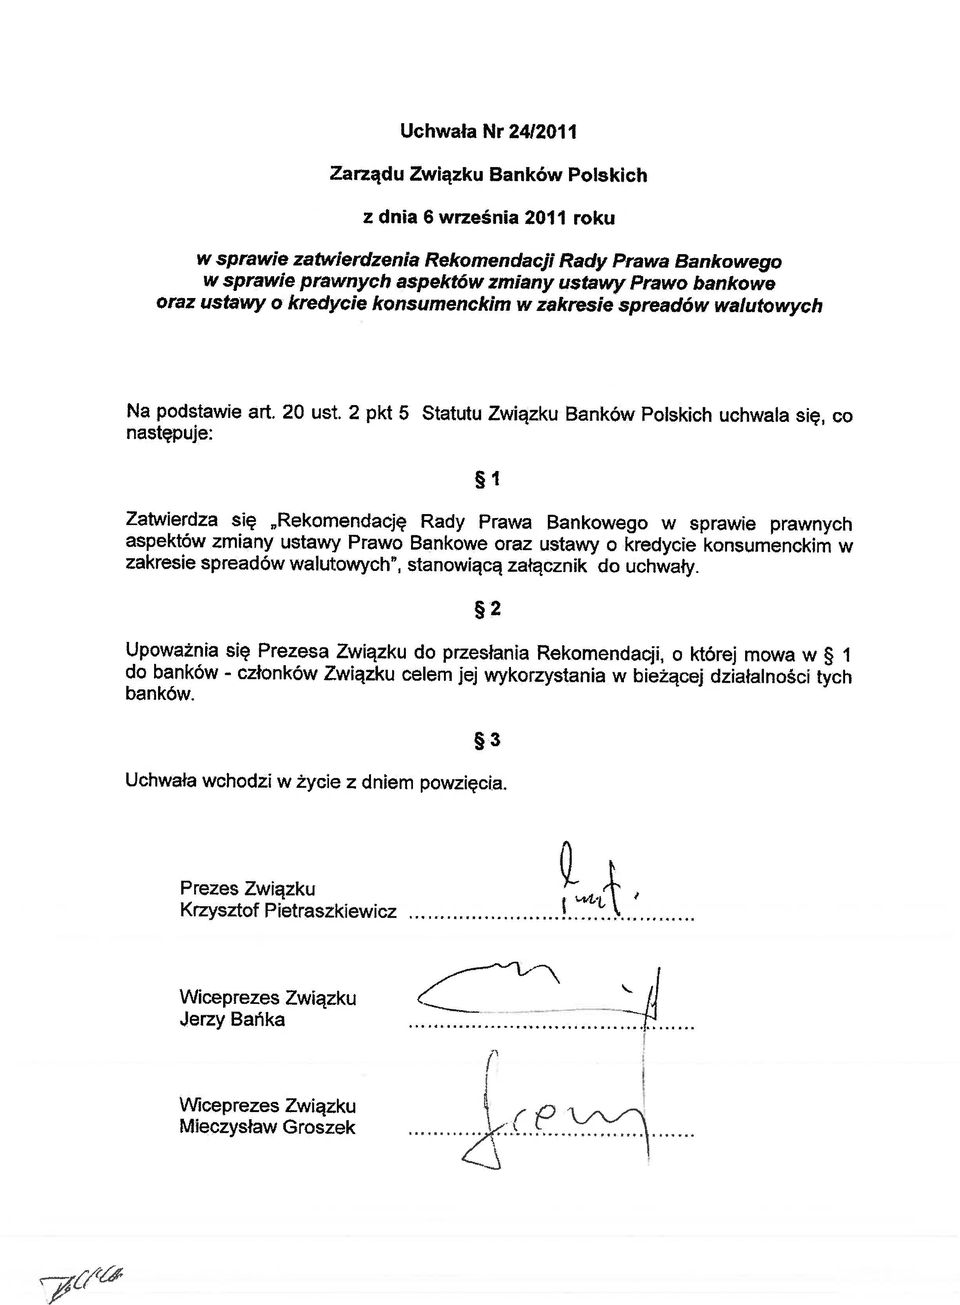 2 pkt 5 następuje: Statutu Związku Banków Polskich uchwala się, co Zatwierdza się Rekomendację Rady Prawa Bankowego w sprawie prawnych aspektów zmiany ustawy Prawo Bankowe oraz ustawy o kredycie